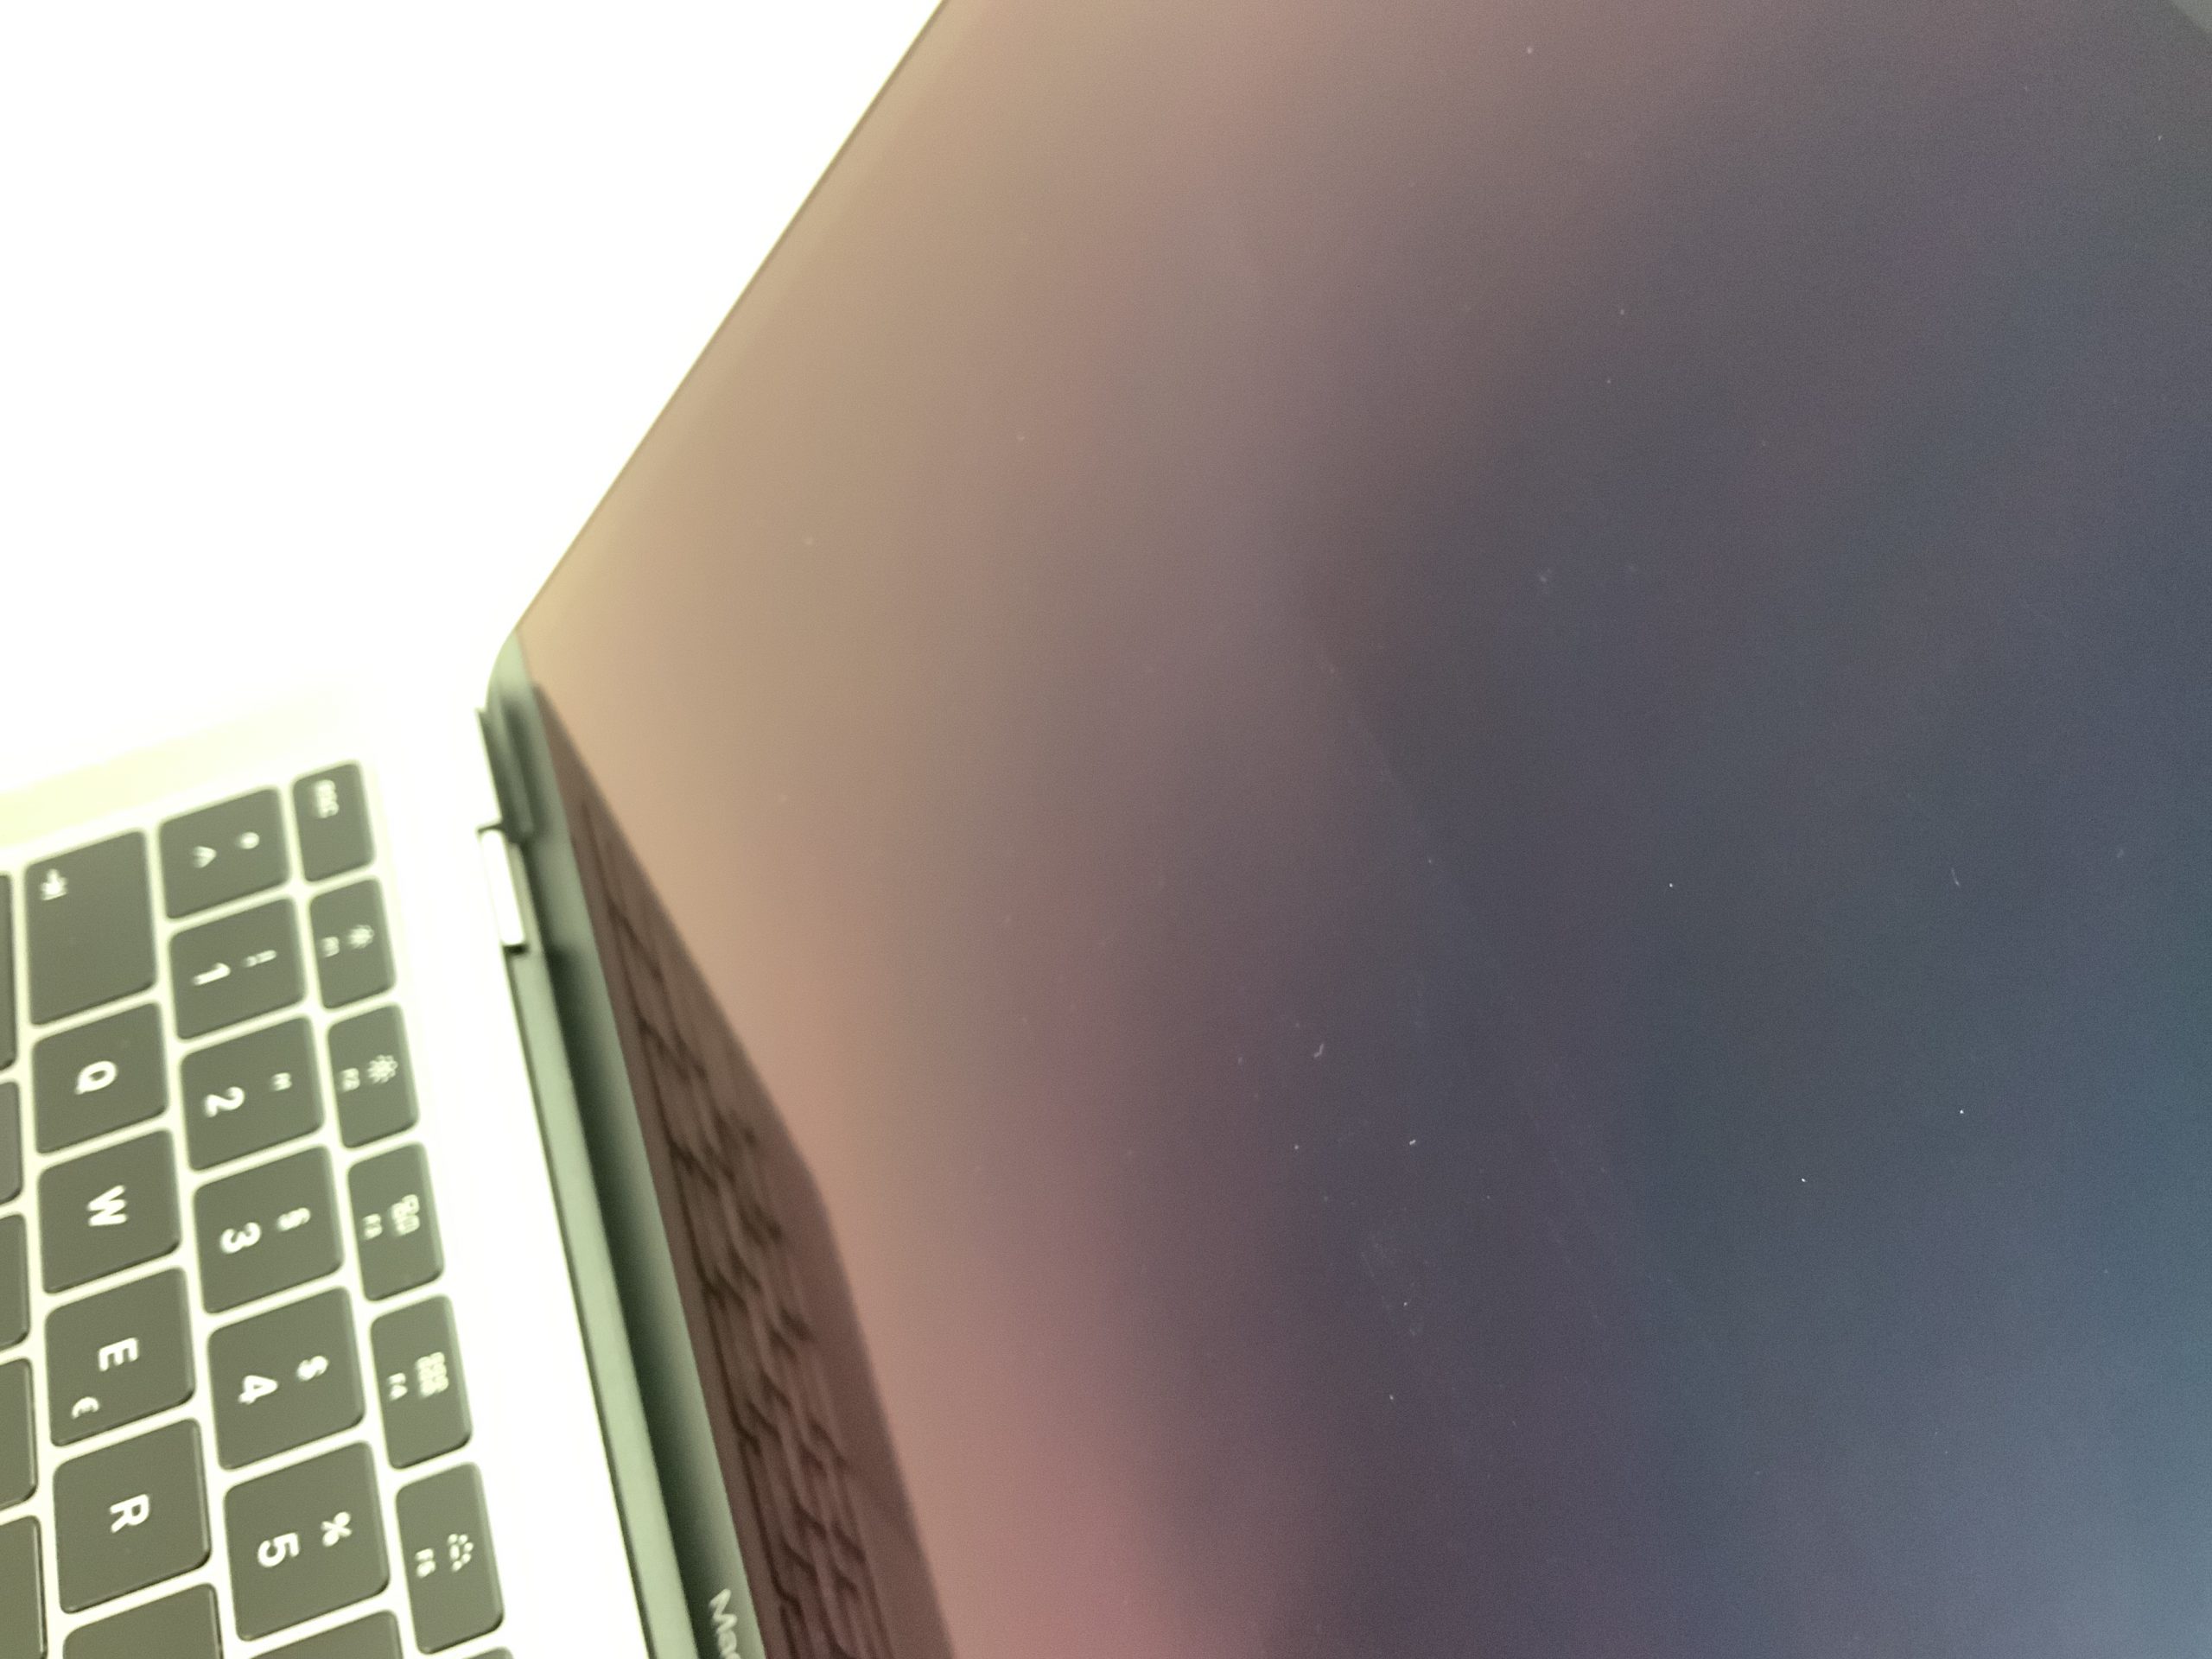 MacBook Air 13" Mid 2019 (Intel Core i5 1.6 GHz 8 GB RAM 512 GB SSD), Space Gray, Intel Core i5 1.6 GHz, 8 GB RAM, 512 GB SSD, imagen 2